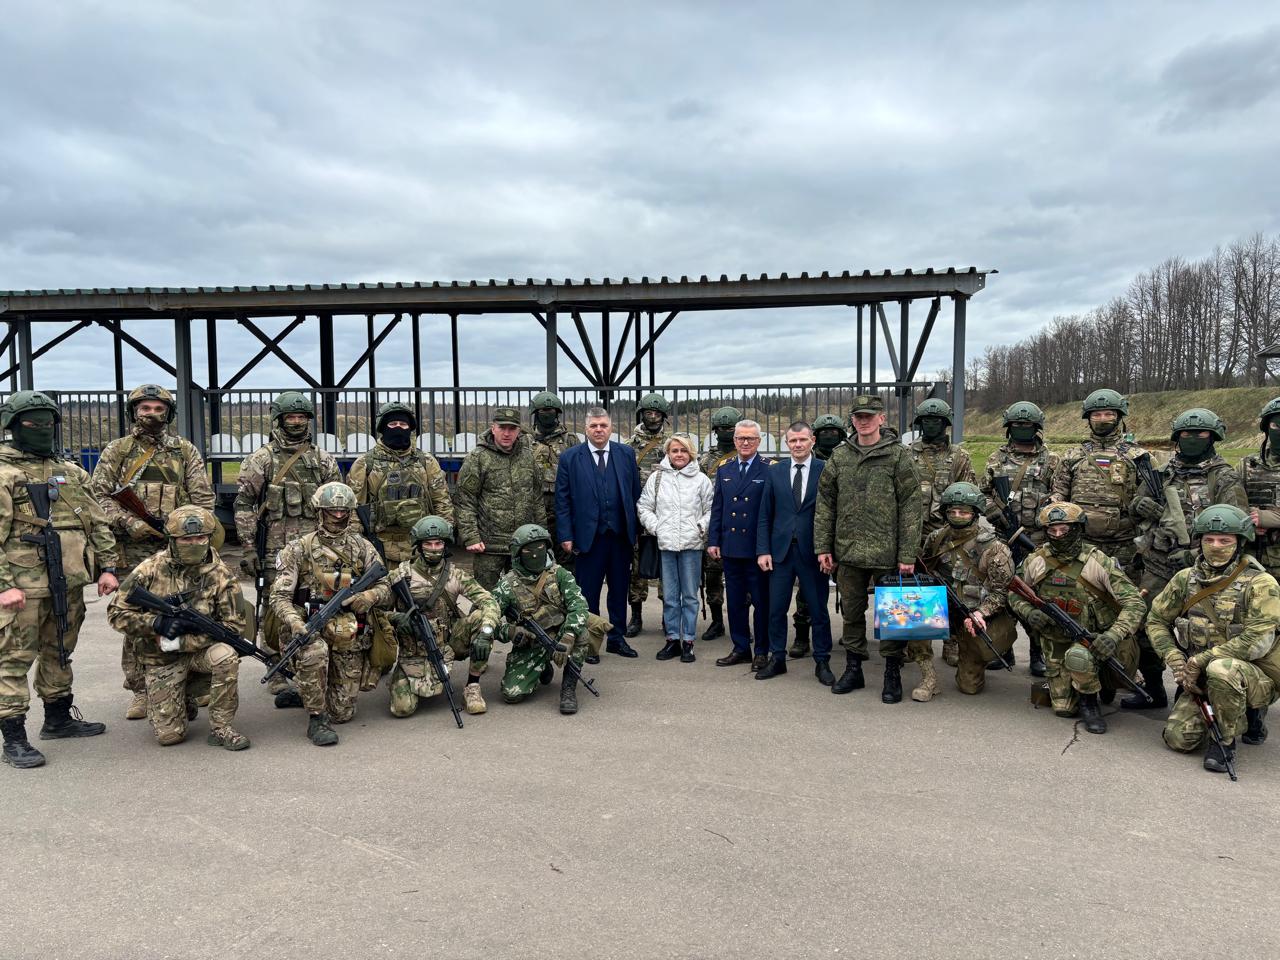 Представители ректората и профсоюзного комитета МГТУ ГА встретились с бойцами СВО на полигоне в Московской области